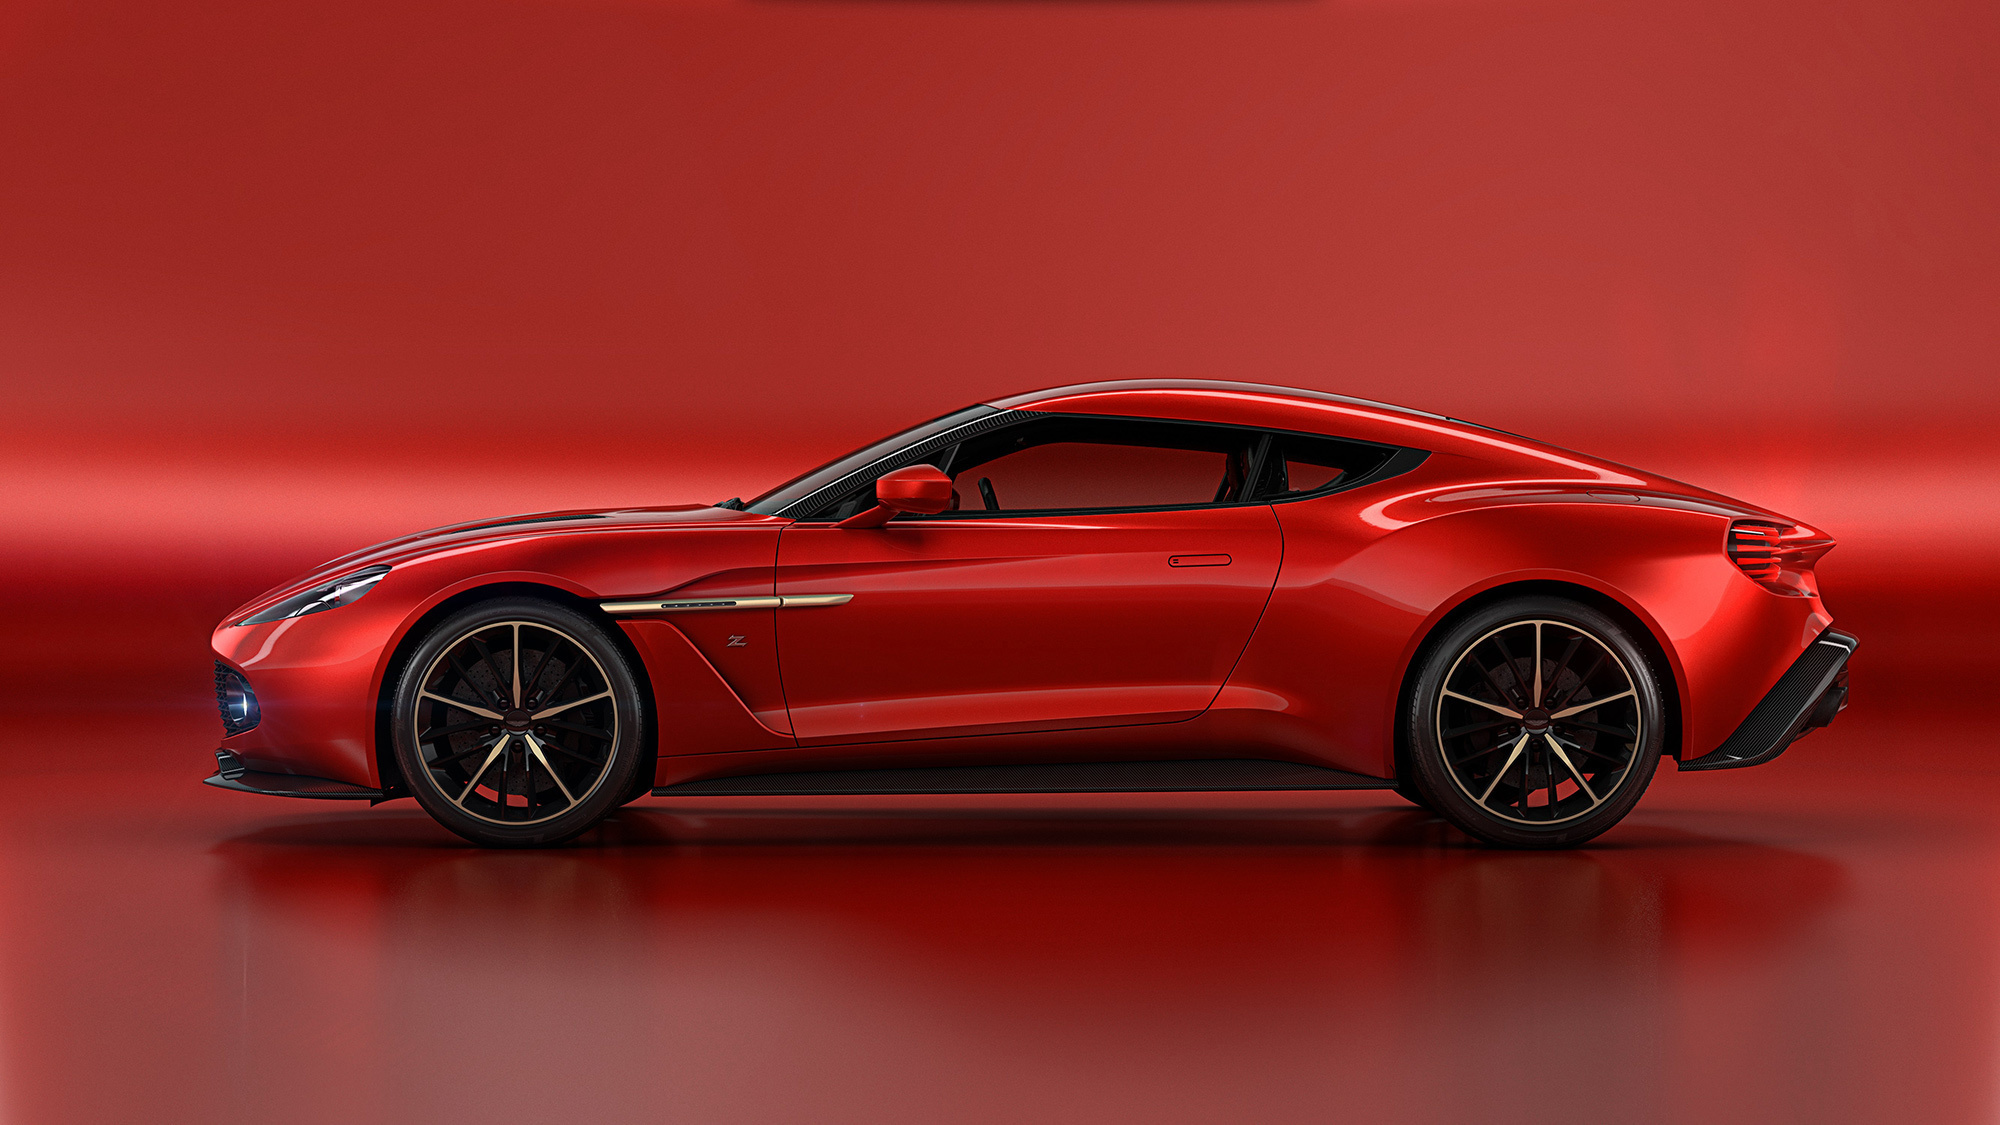 Aston Martin Vanquish Zagato Concept Pictures